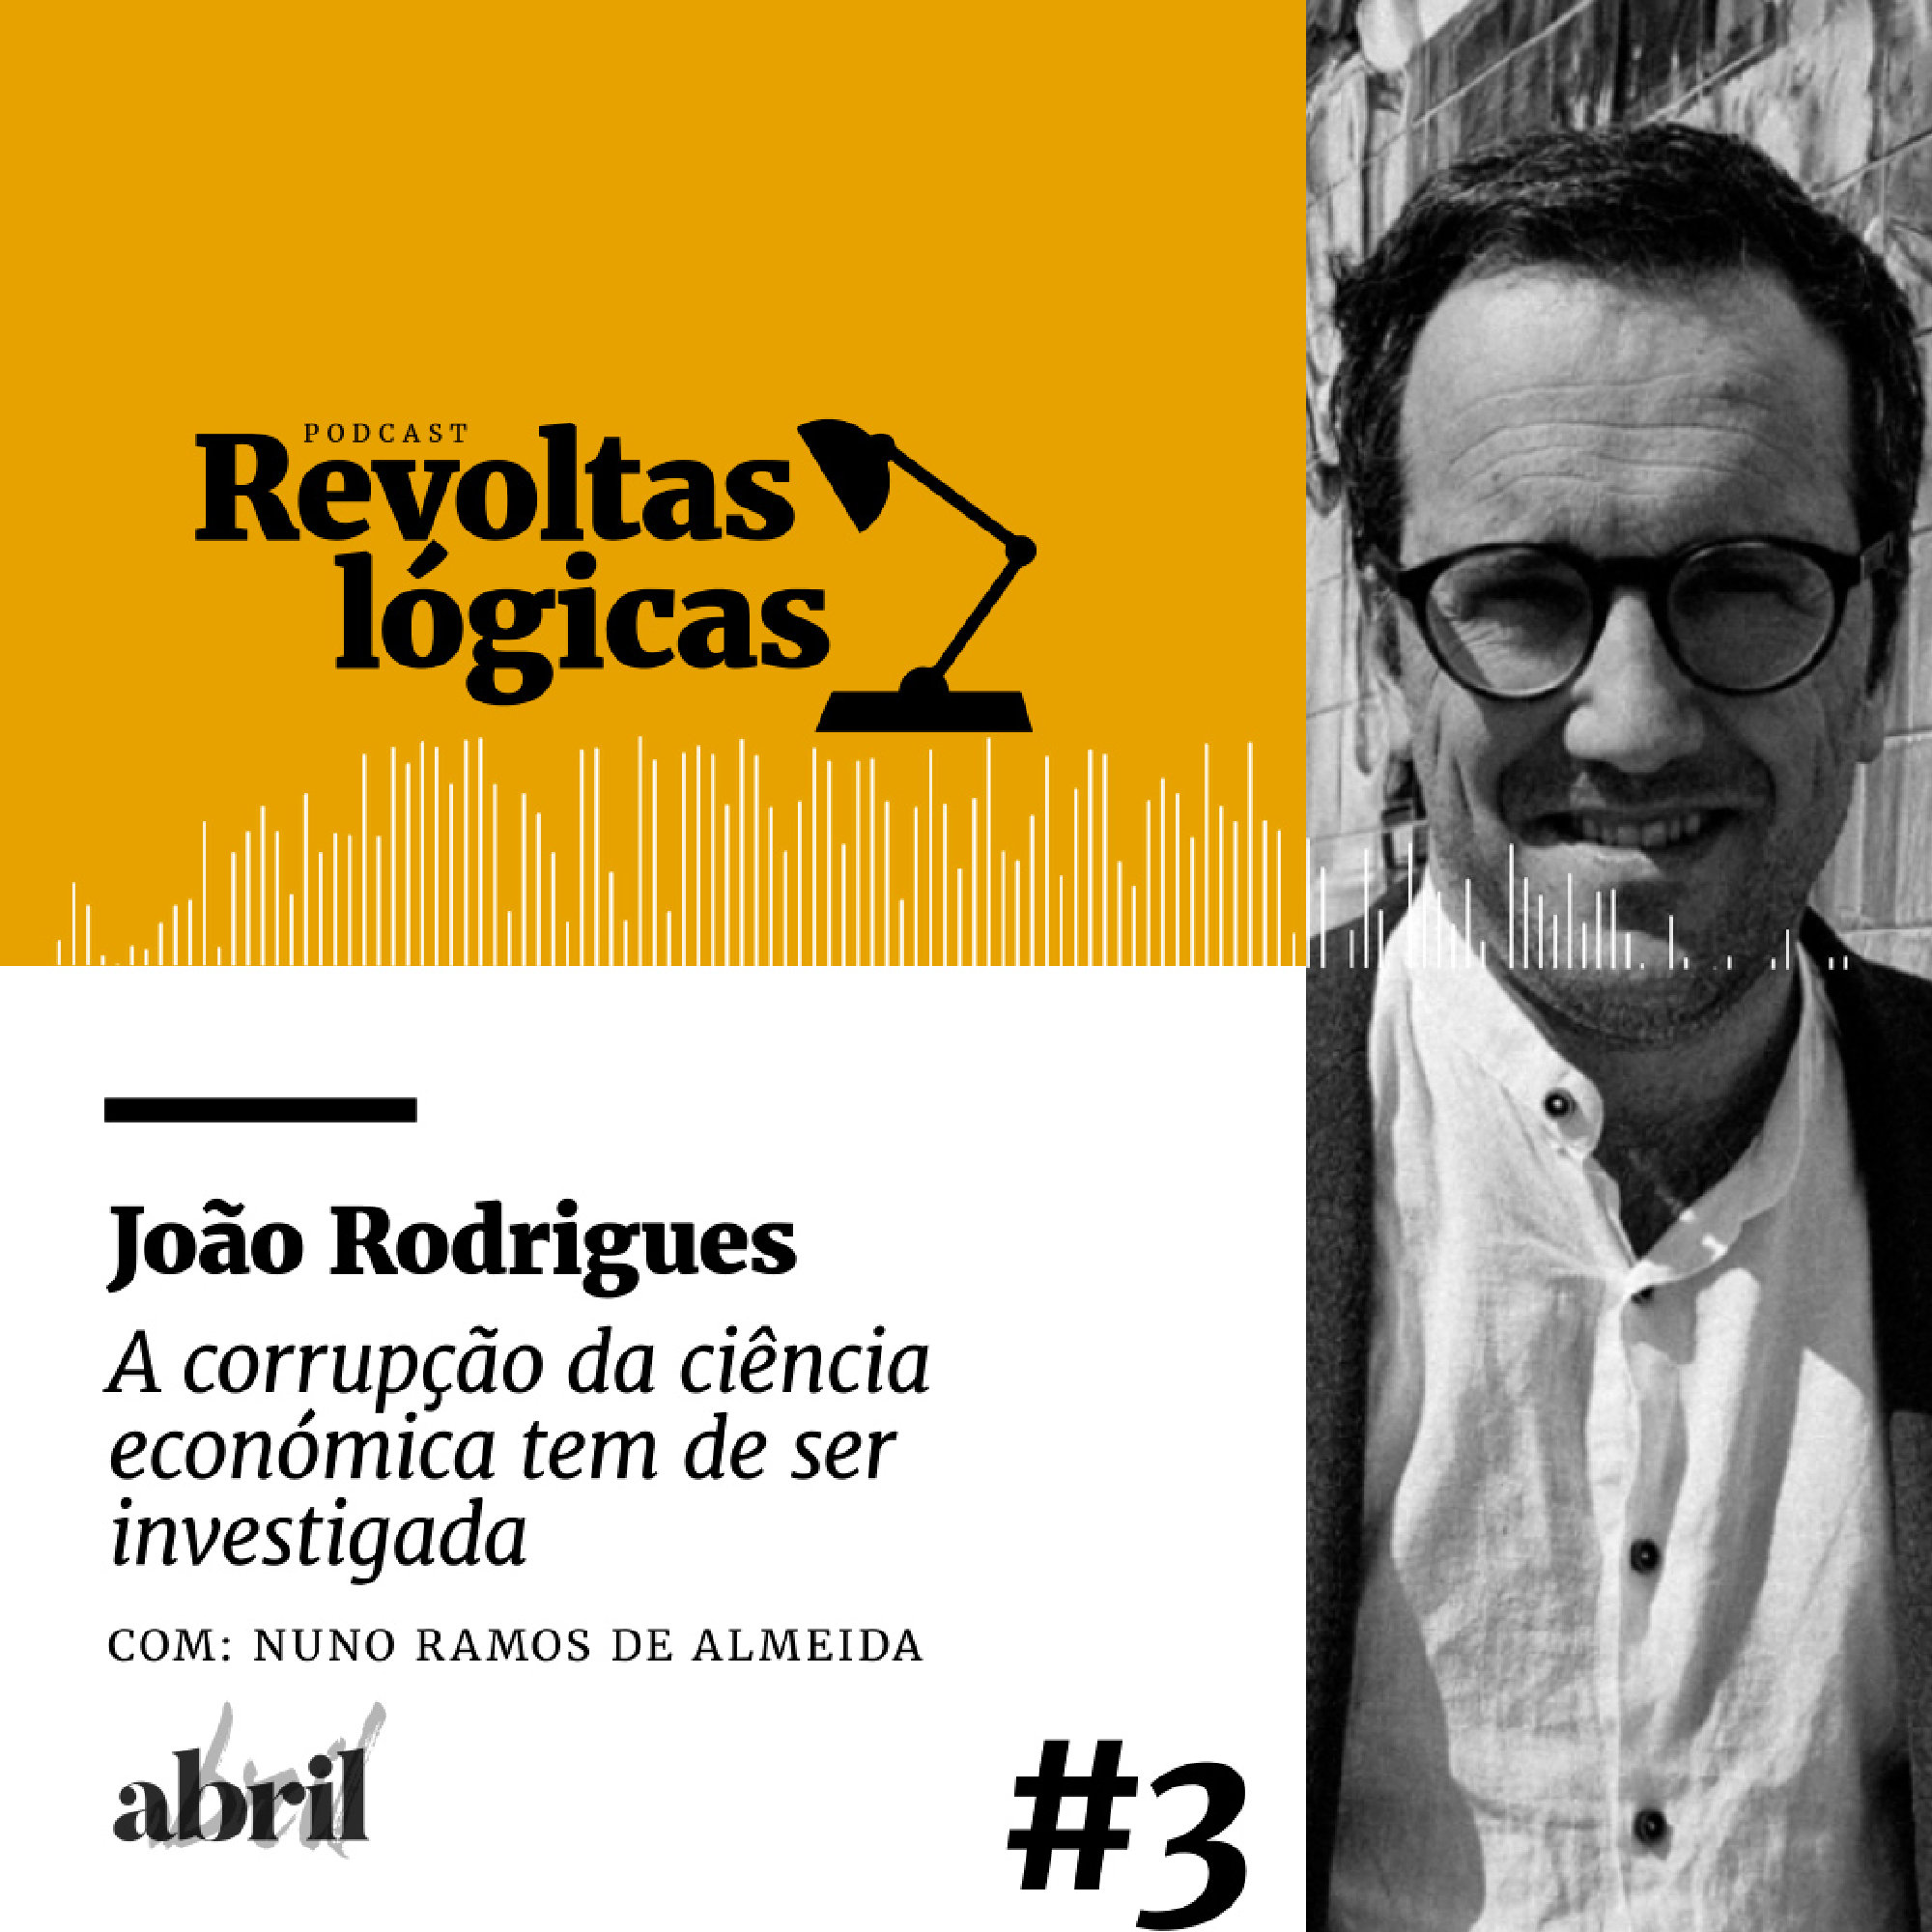 Revoltas lógicas #3 - João Rodrigues - A corrupção da ciência económica tem de ser investigado